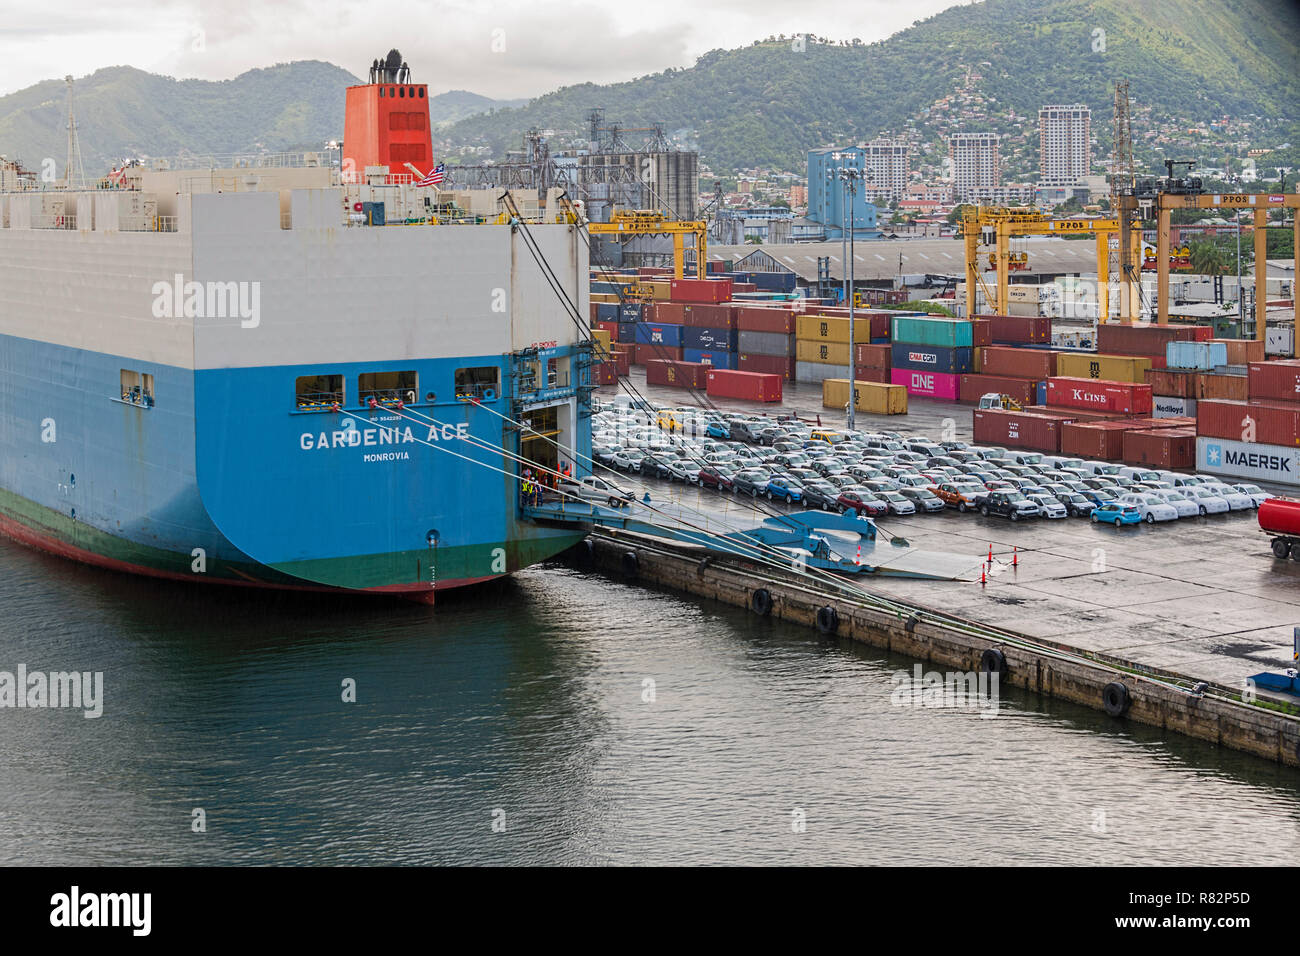 Shipping containers Port of Spain Trinidad & Tobago & Cargo Ship Gardenia Ace Stock Photo